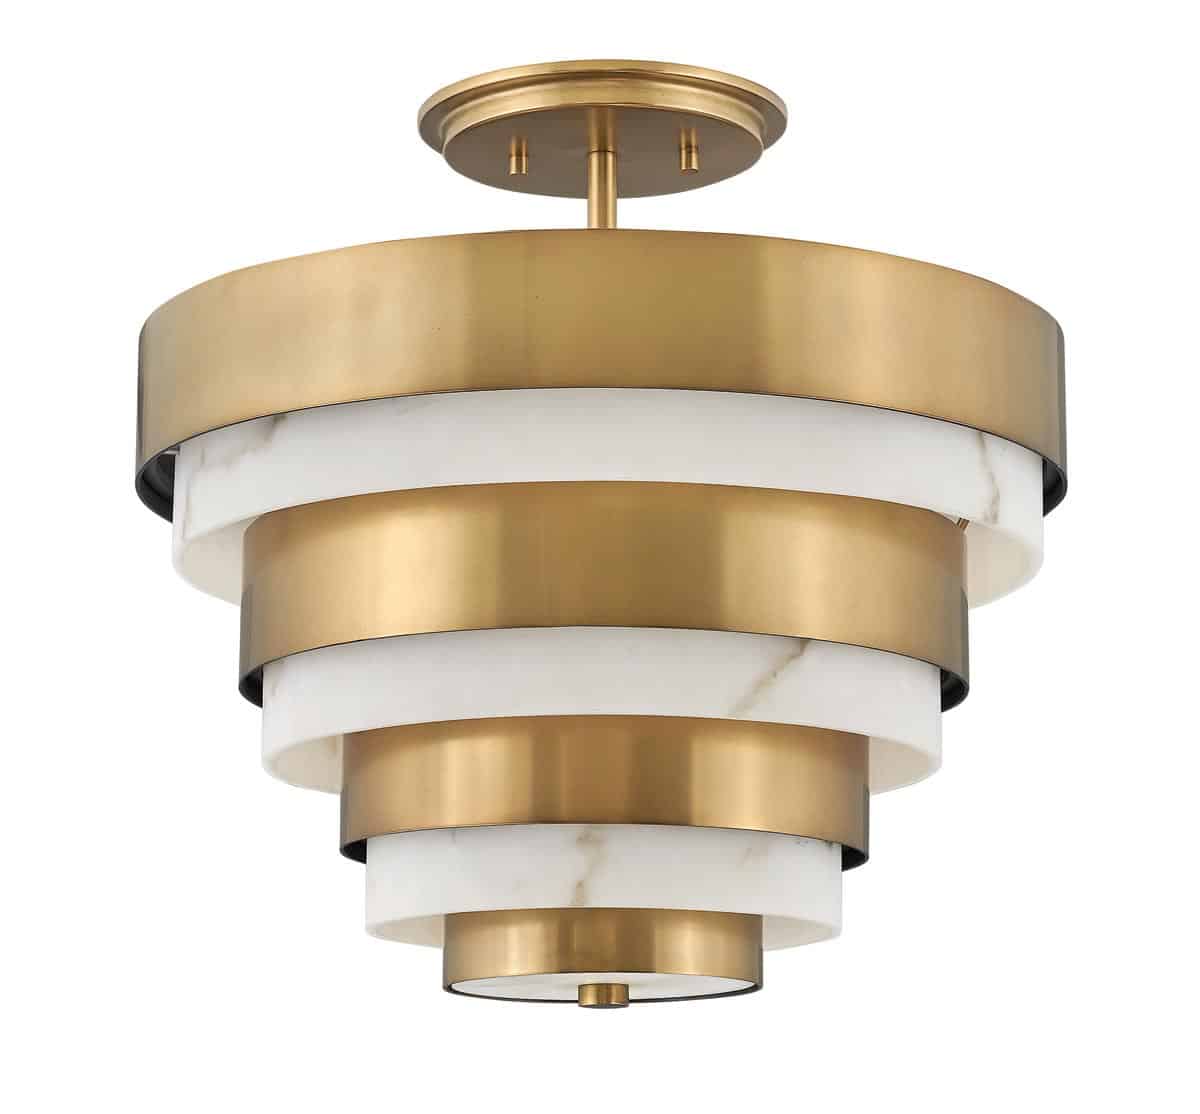 Echelon Art Deco Style 3 Light Semi Flush Ceiling Light Satin Brass